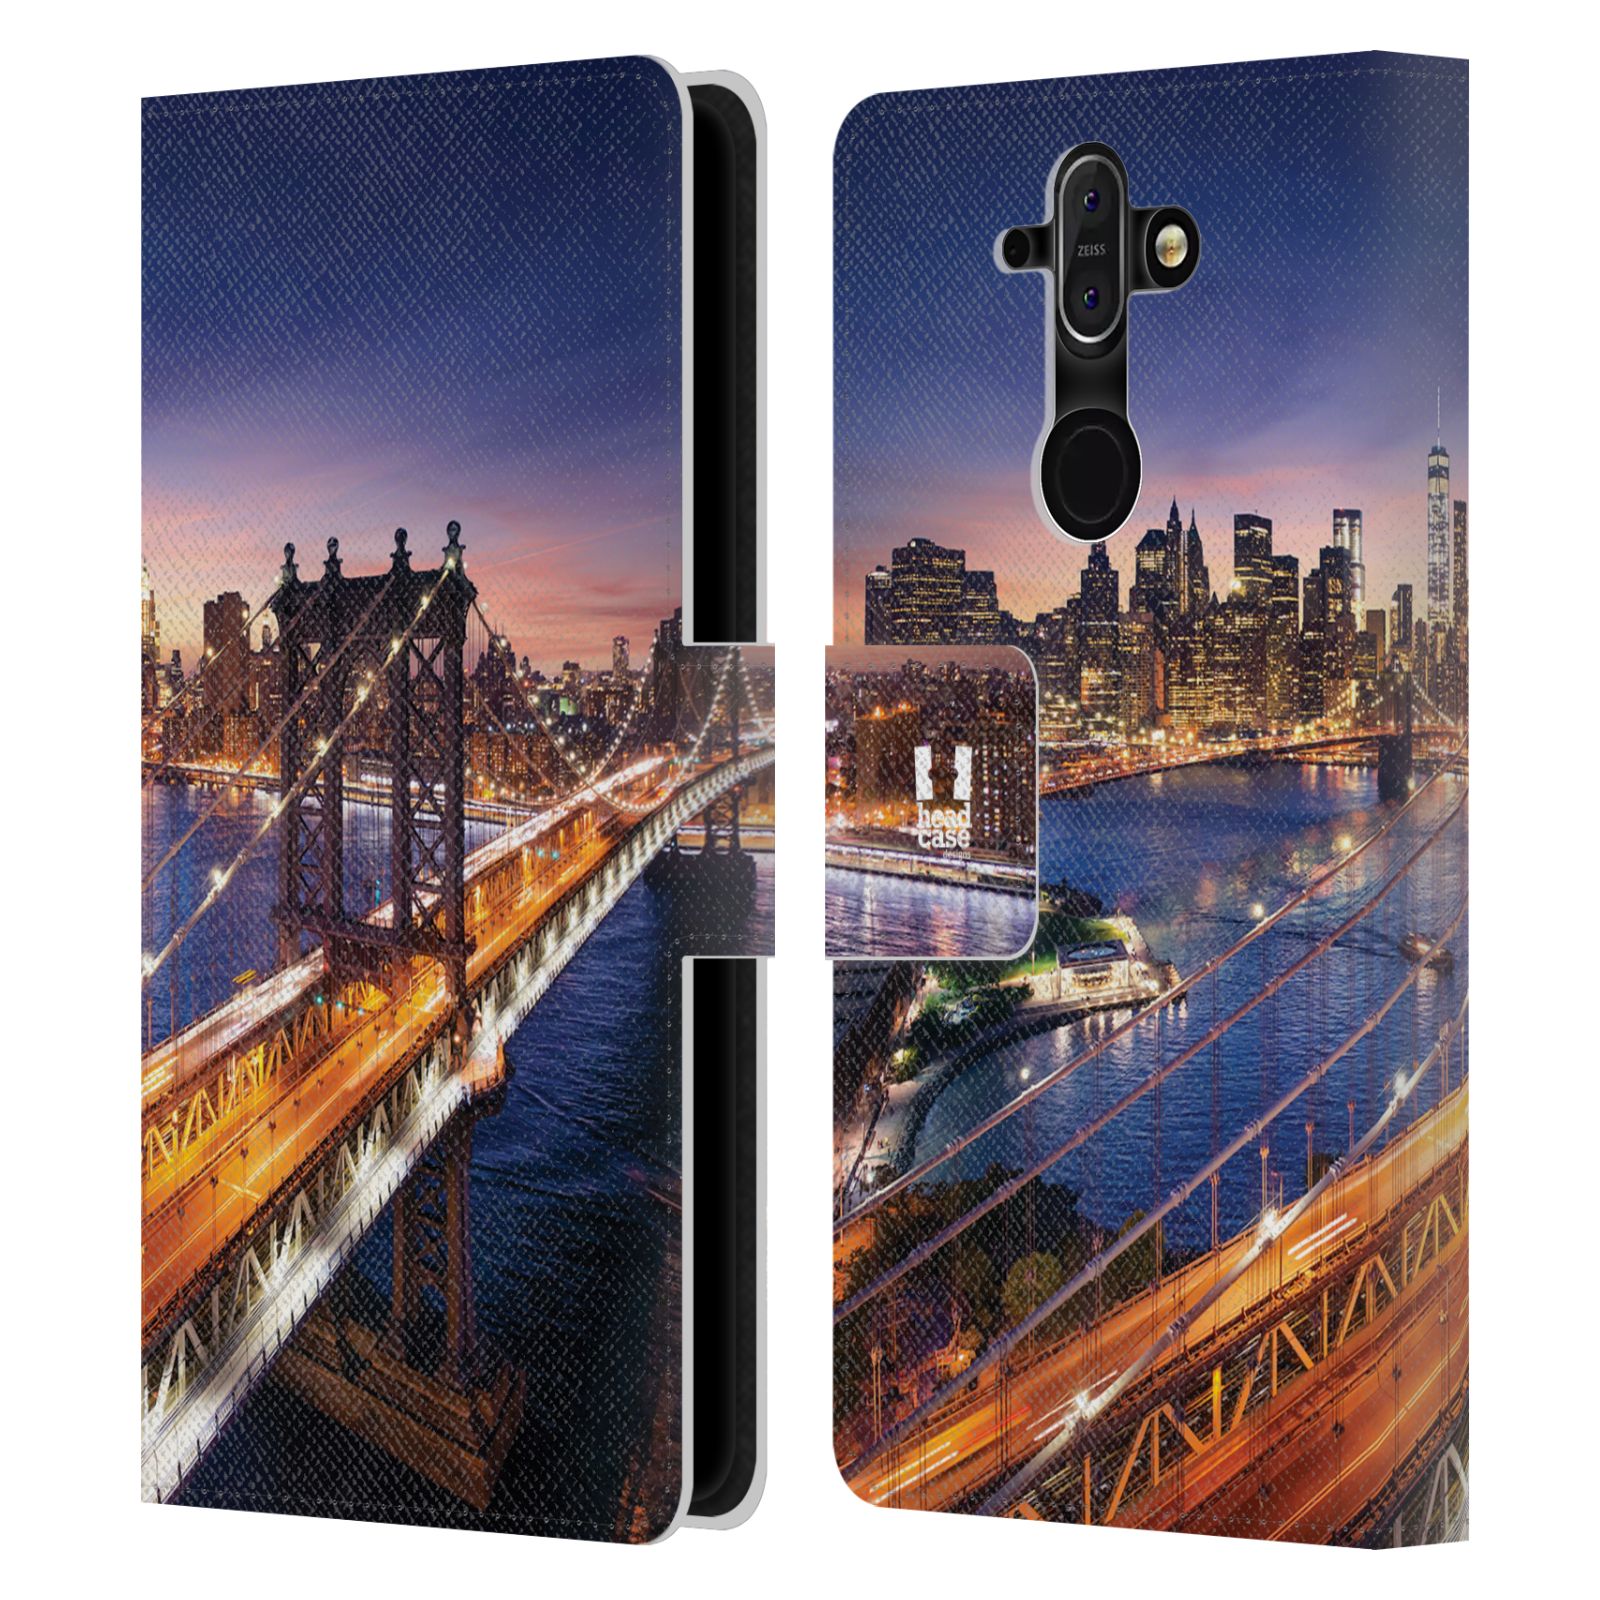 Pouzdro na mobil Nokia 8 Sirocco - Head Case - New York Brooklynský most